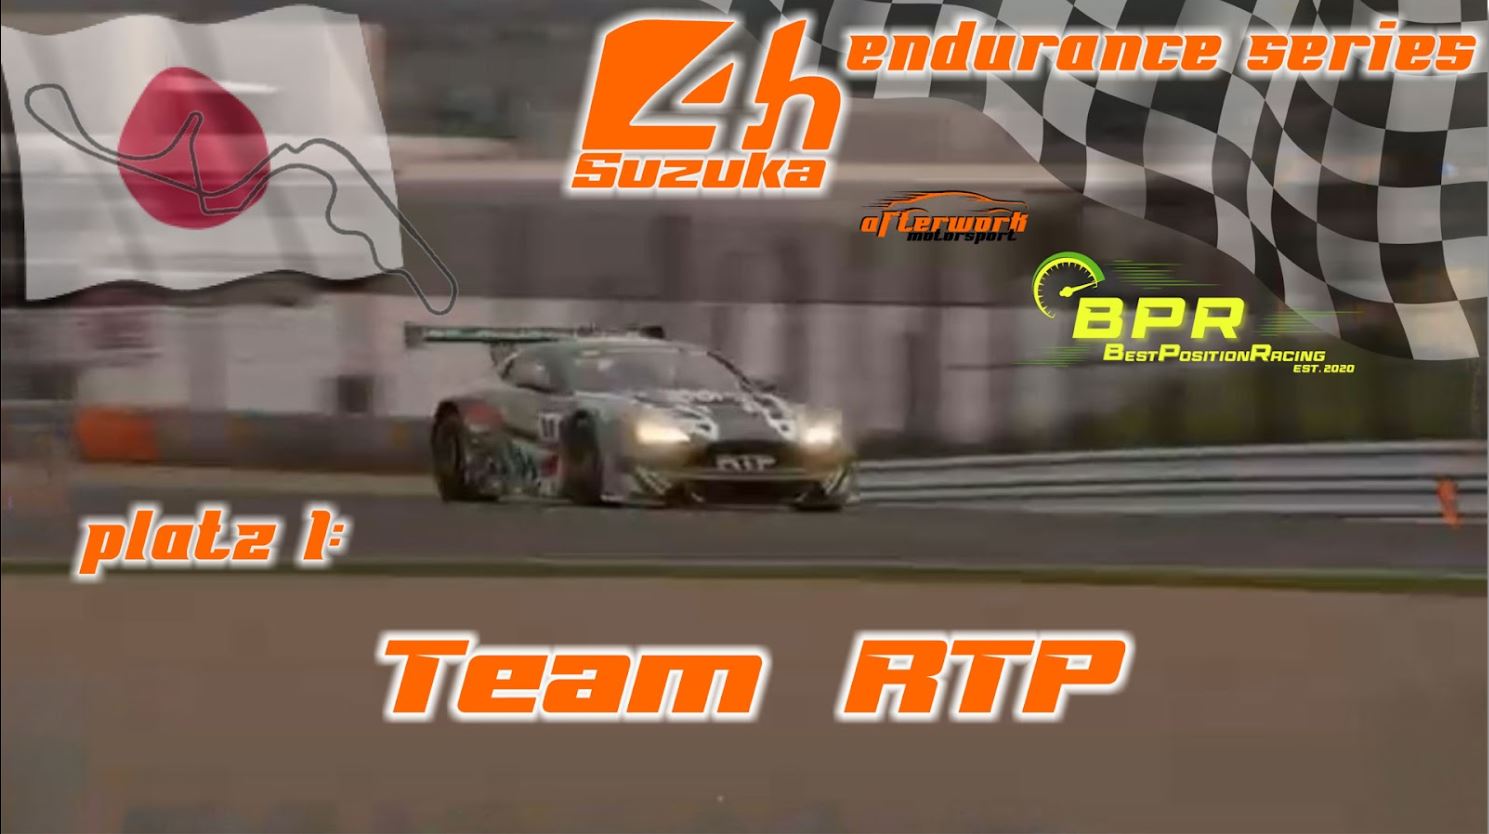 🇯🇵 Endurance Serie: RTP gewinnt in Suzuka 🏆